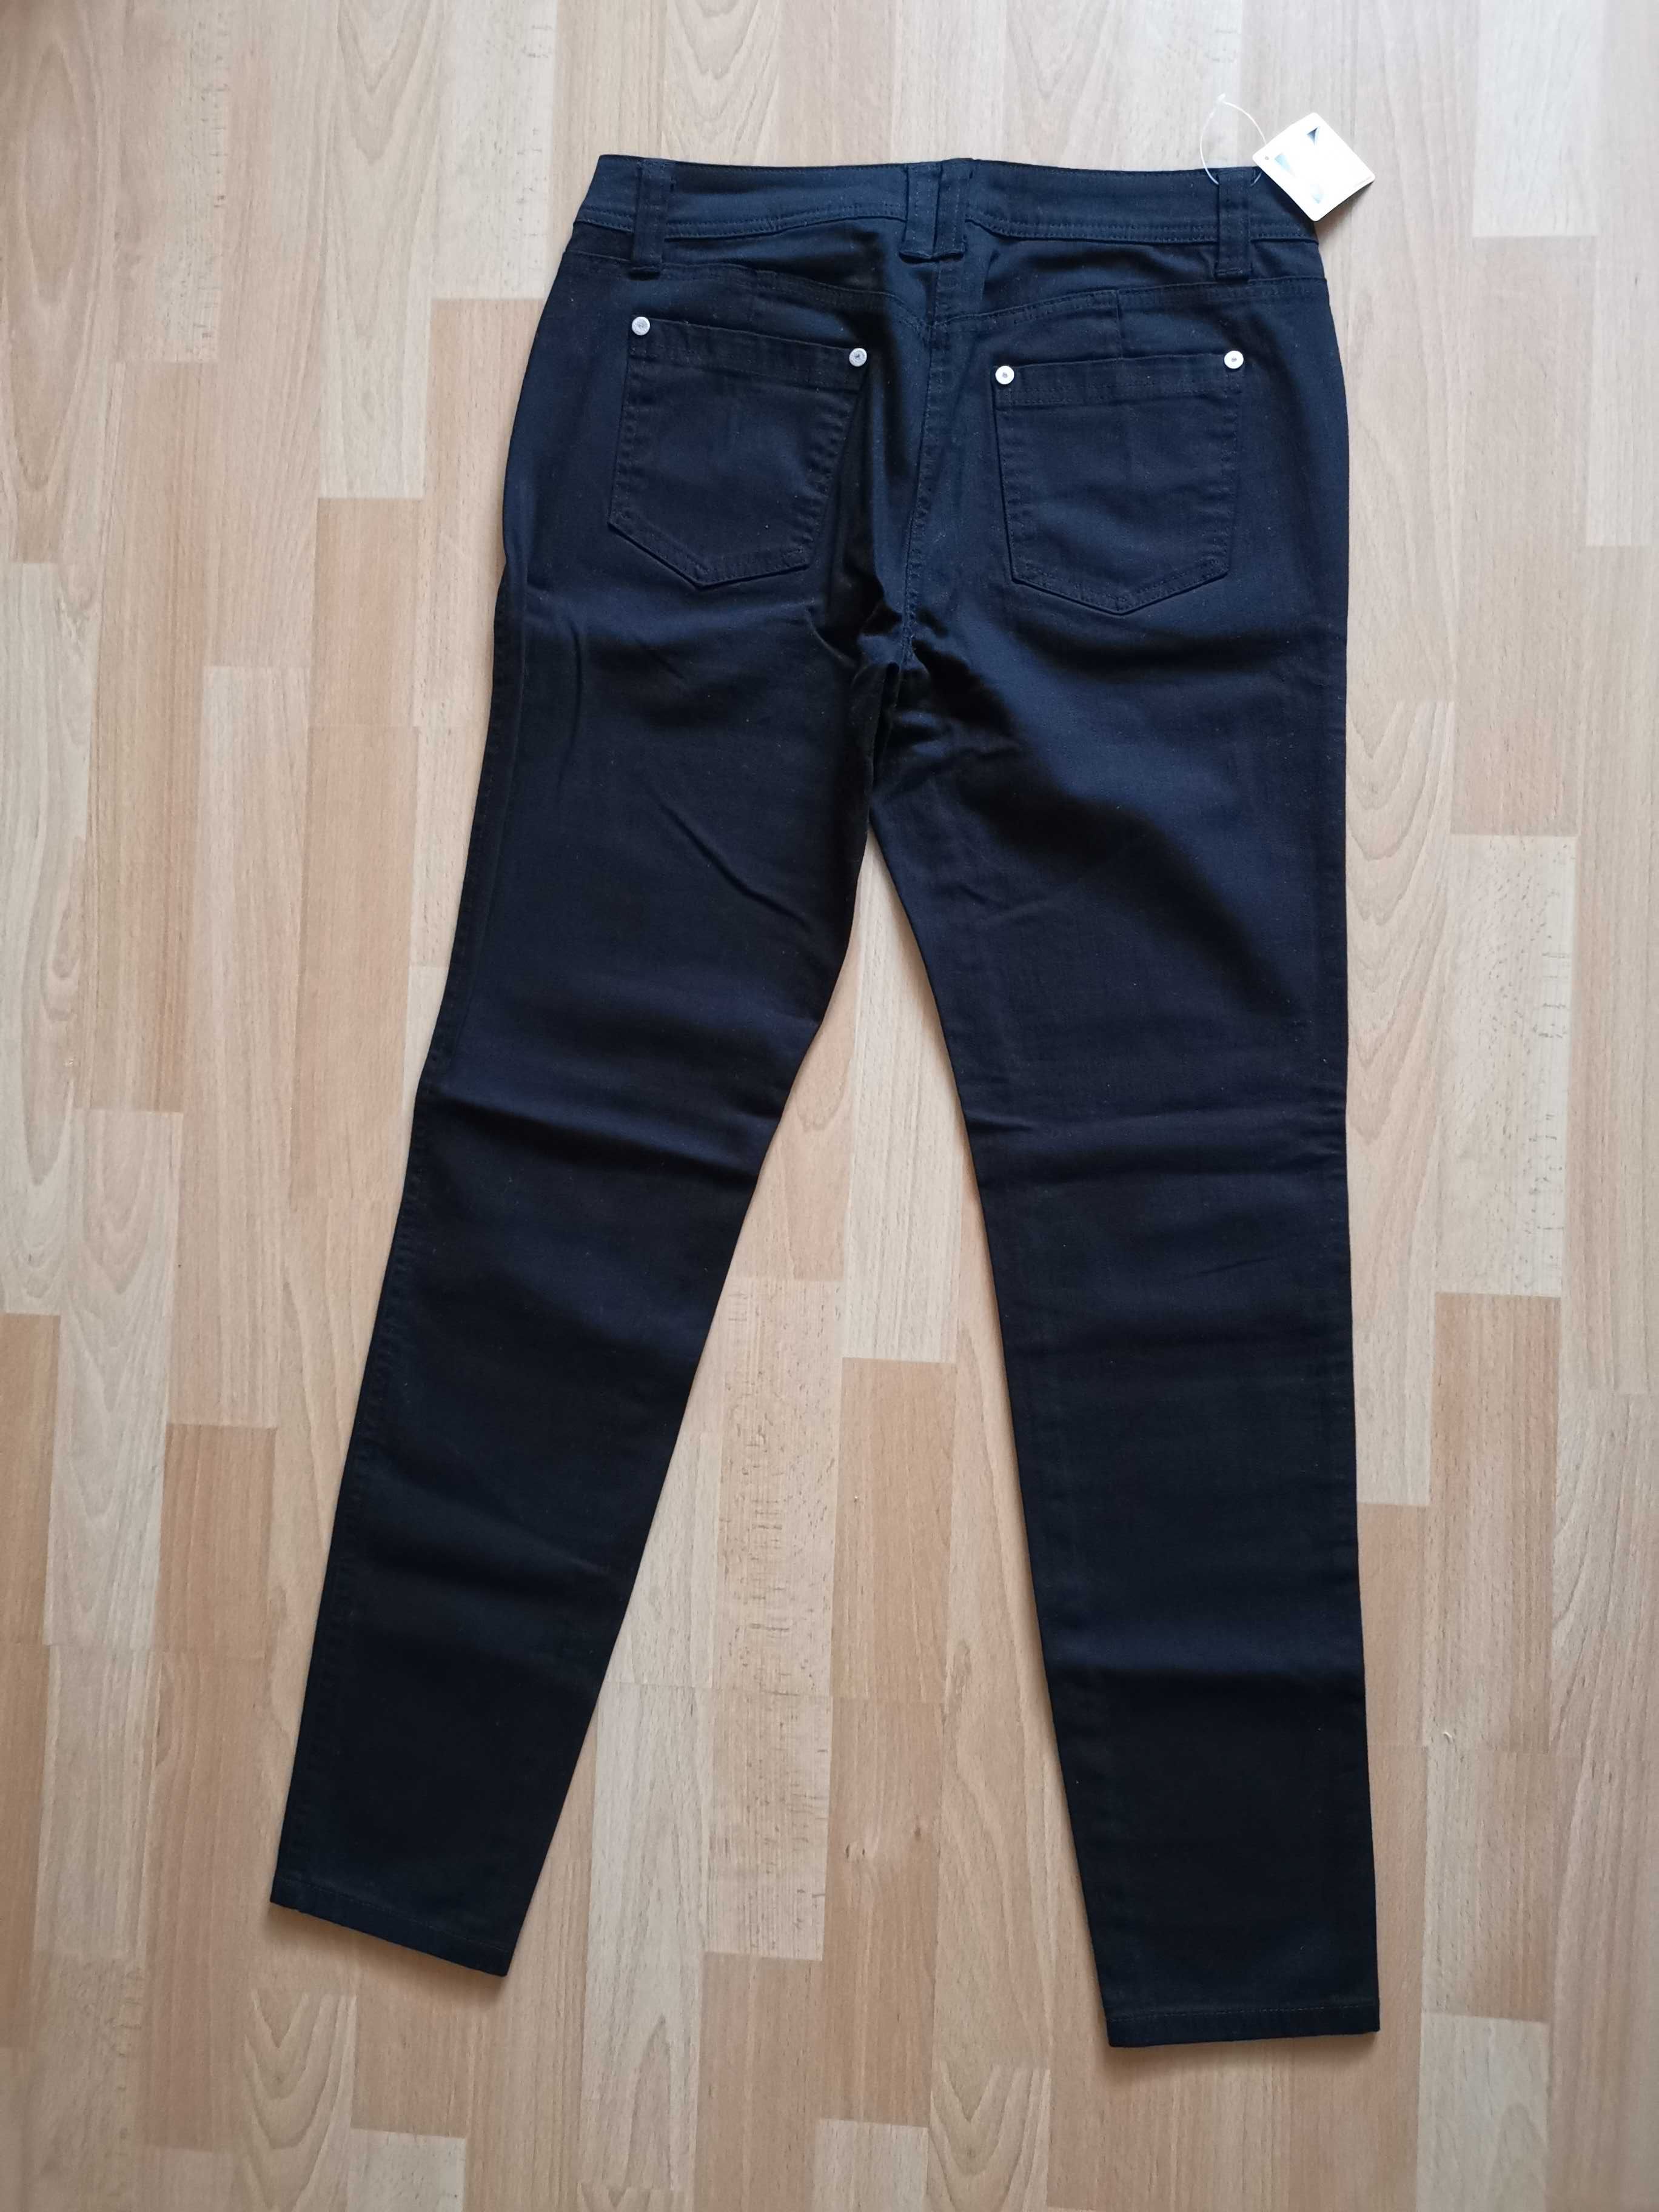 Nowe spodnie jeansowe, czarne r. 40, Body Flirt